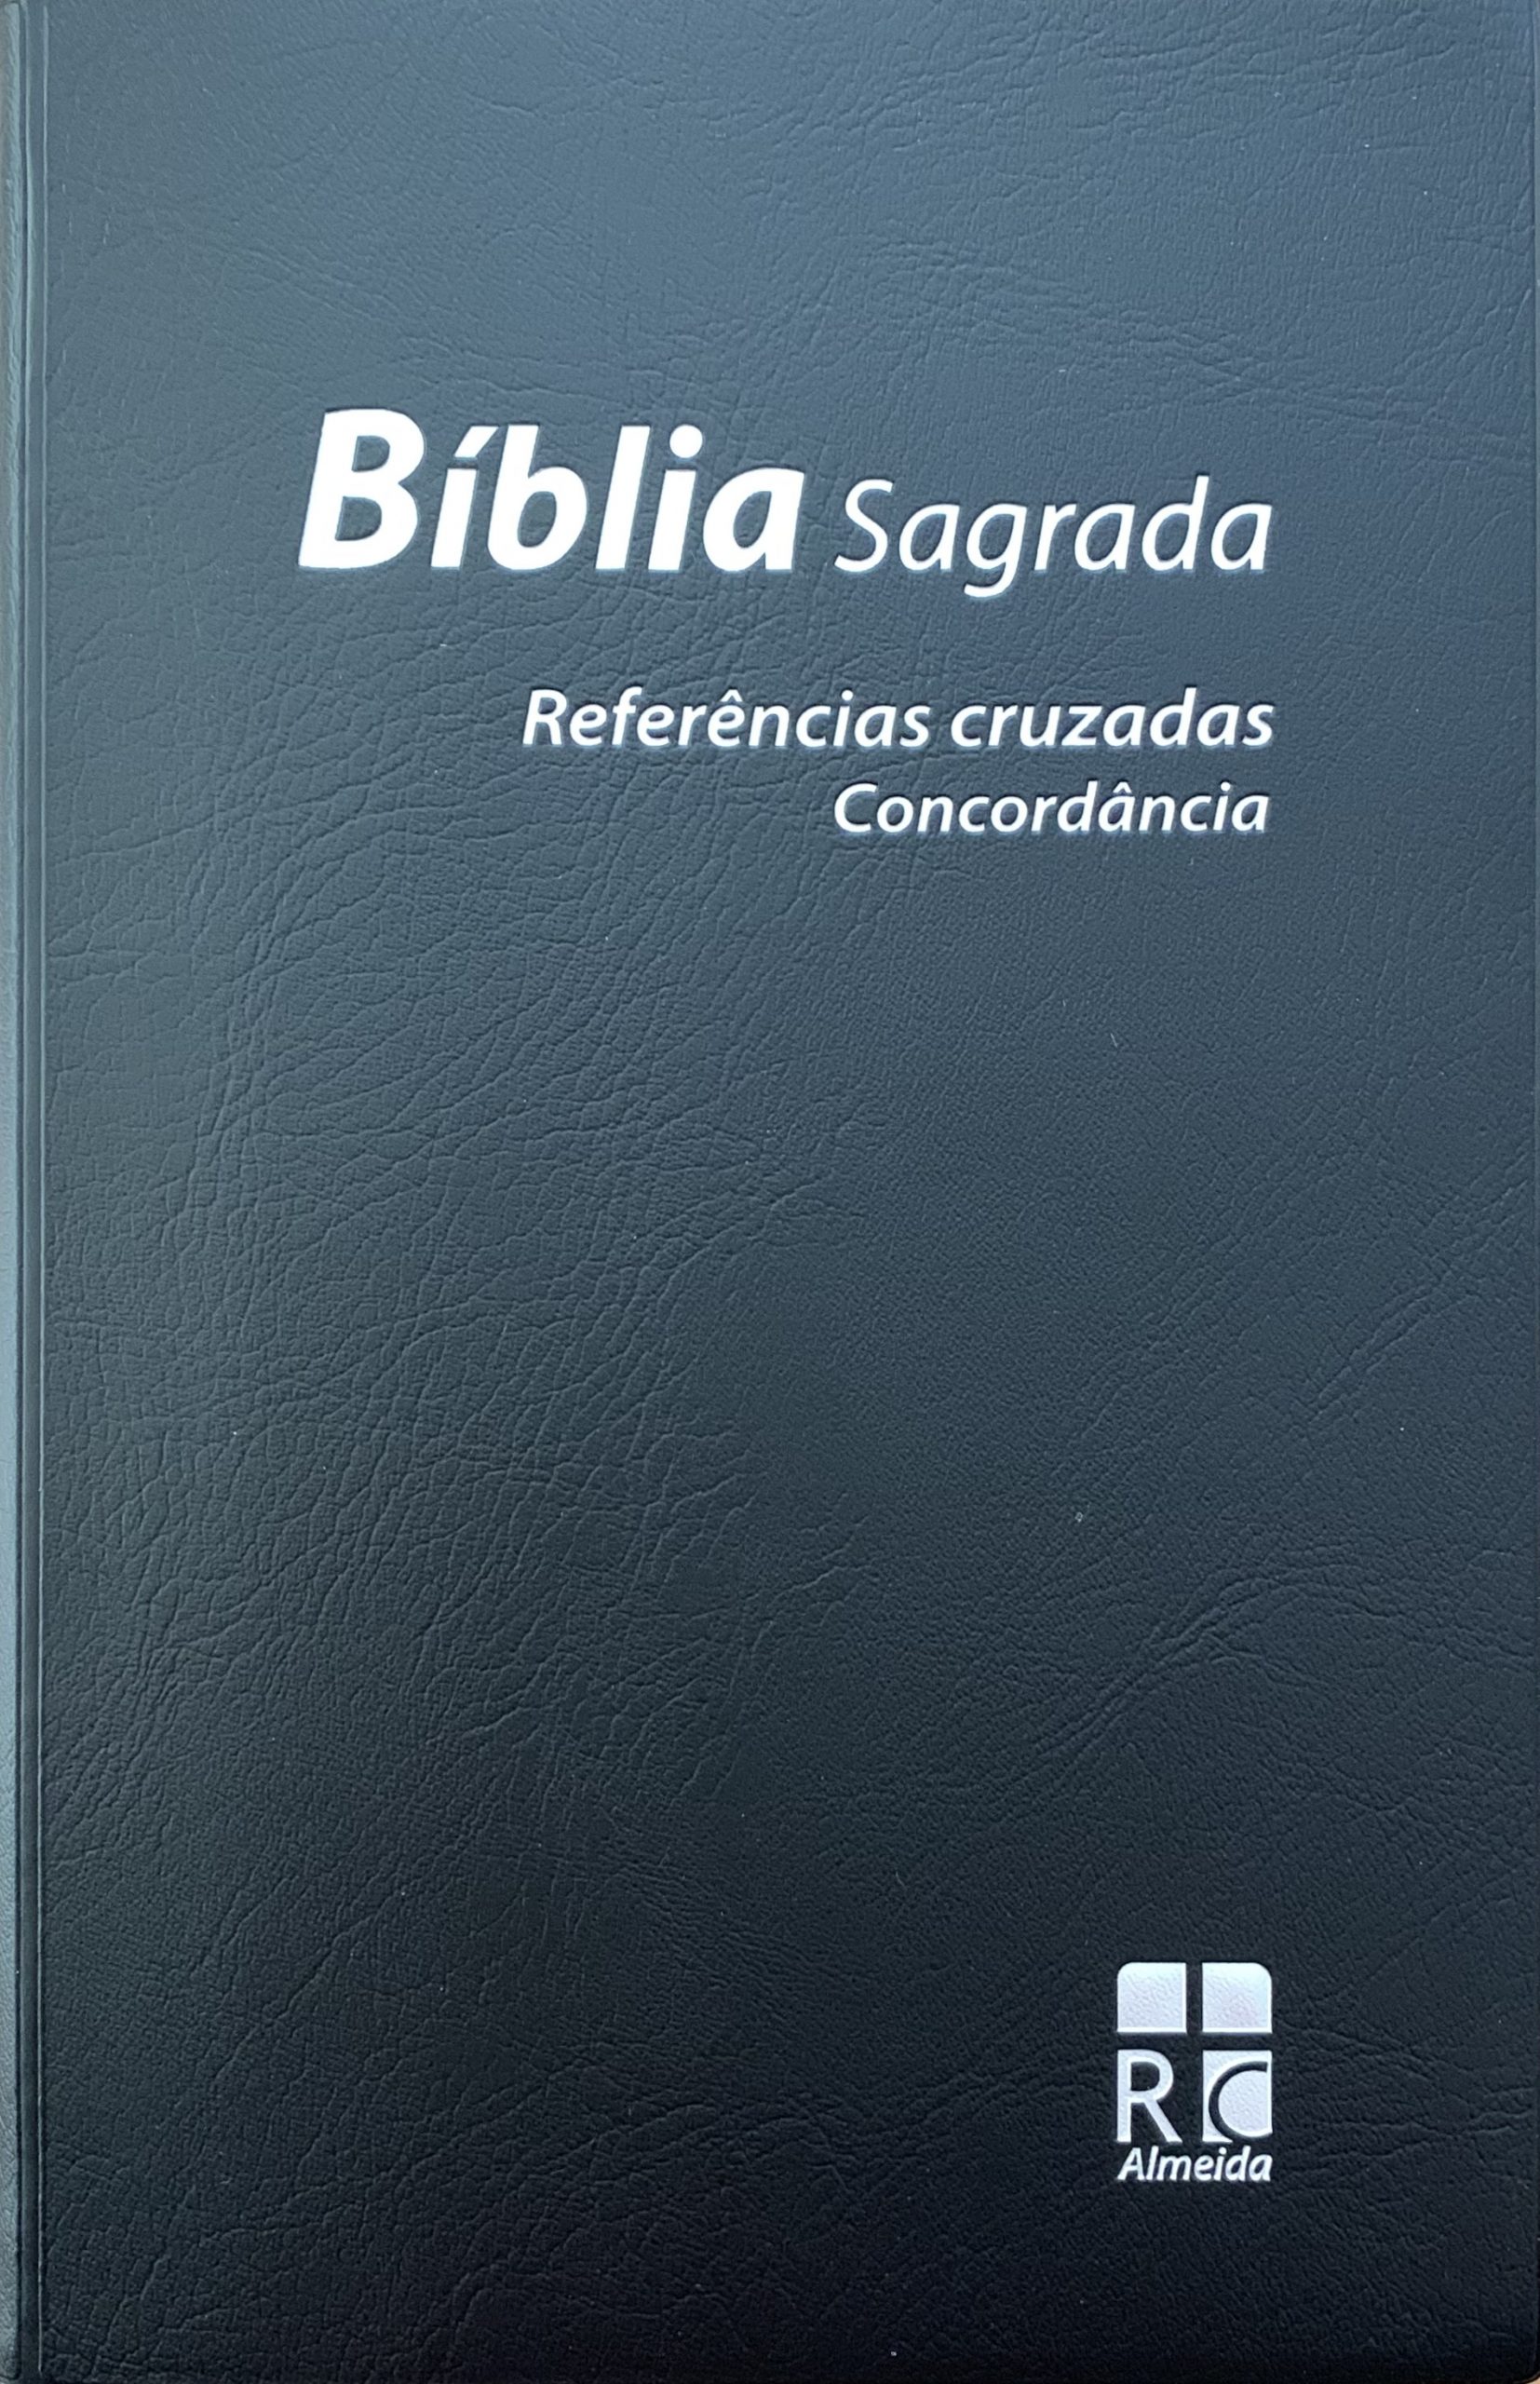 Bible portuguais noir souple